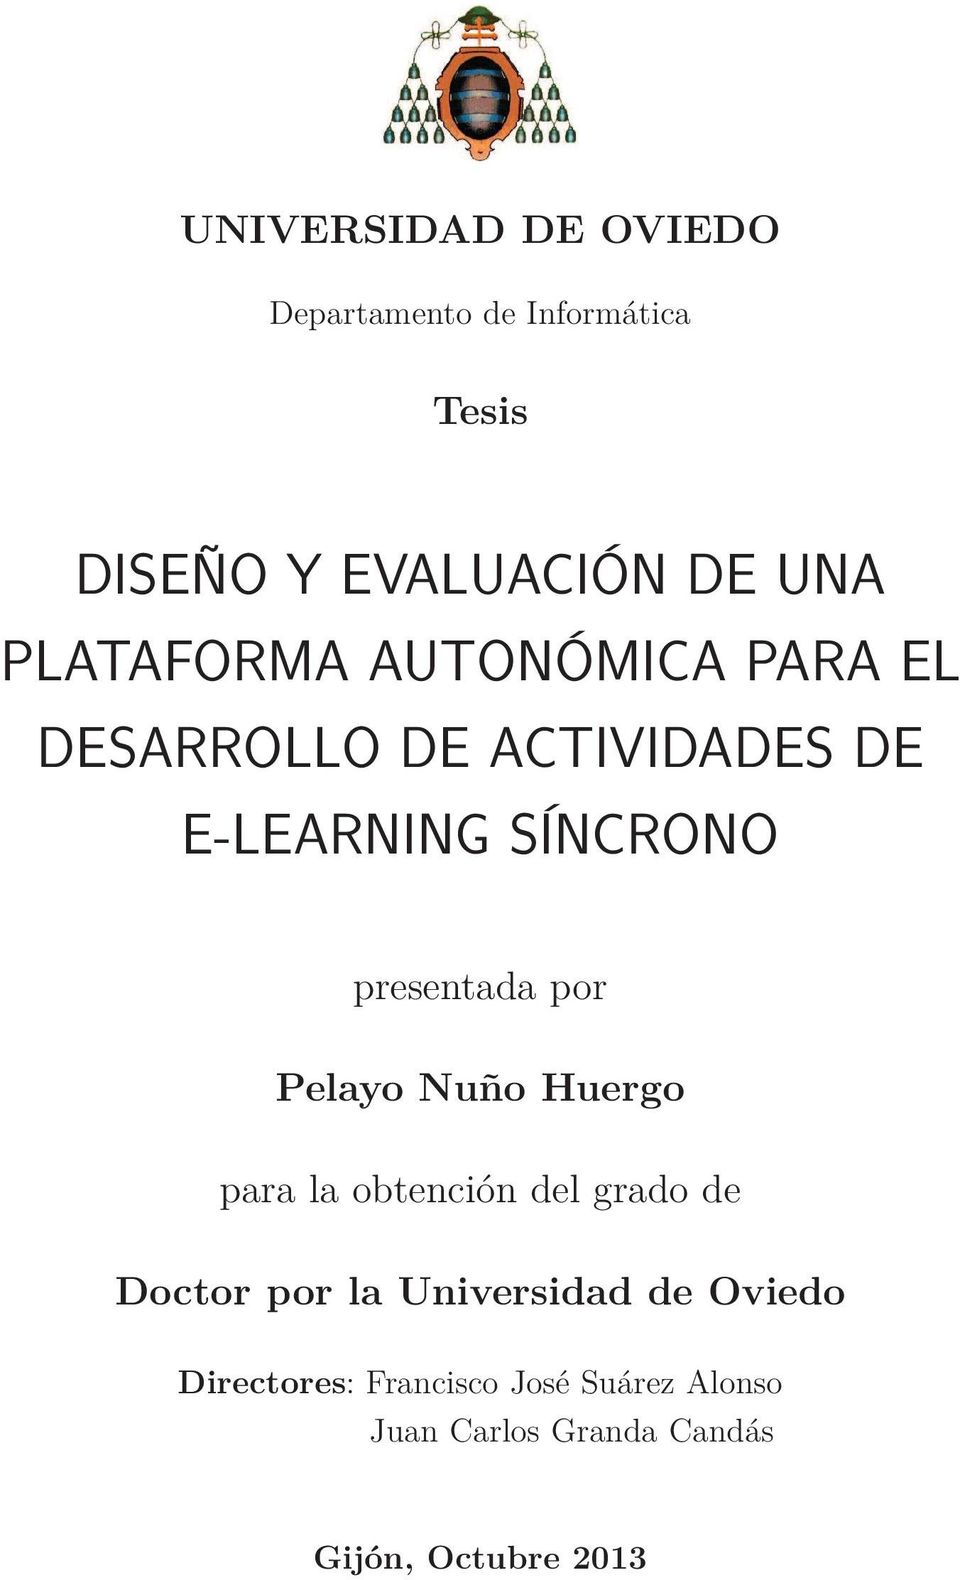 por Pelayo Nuño Huergo para la obtención del grado de Doctor por la Universidad de Oviedo